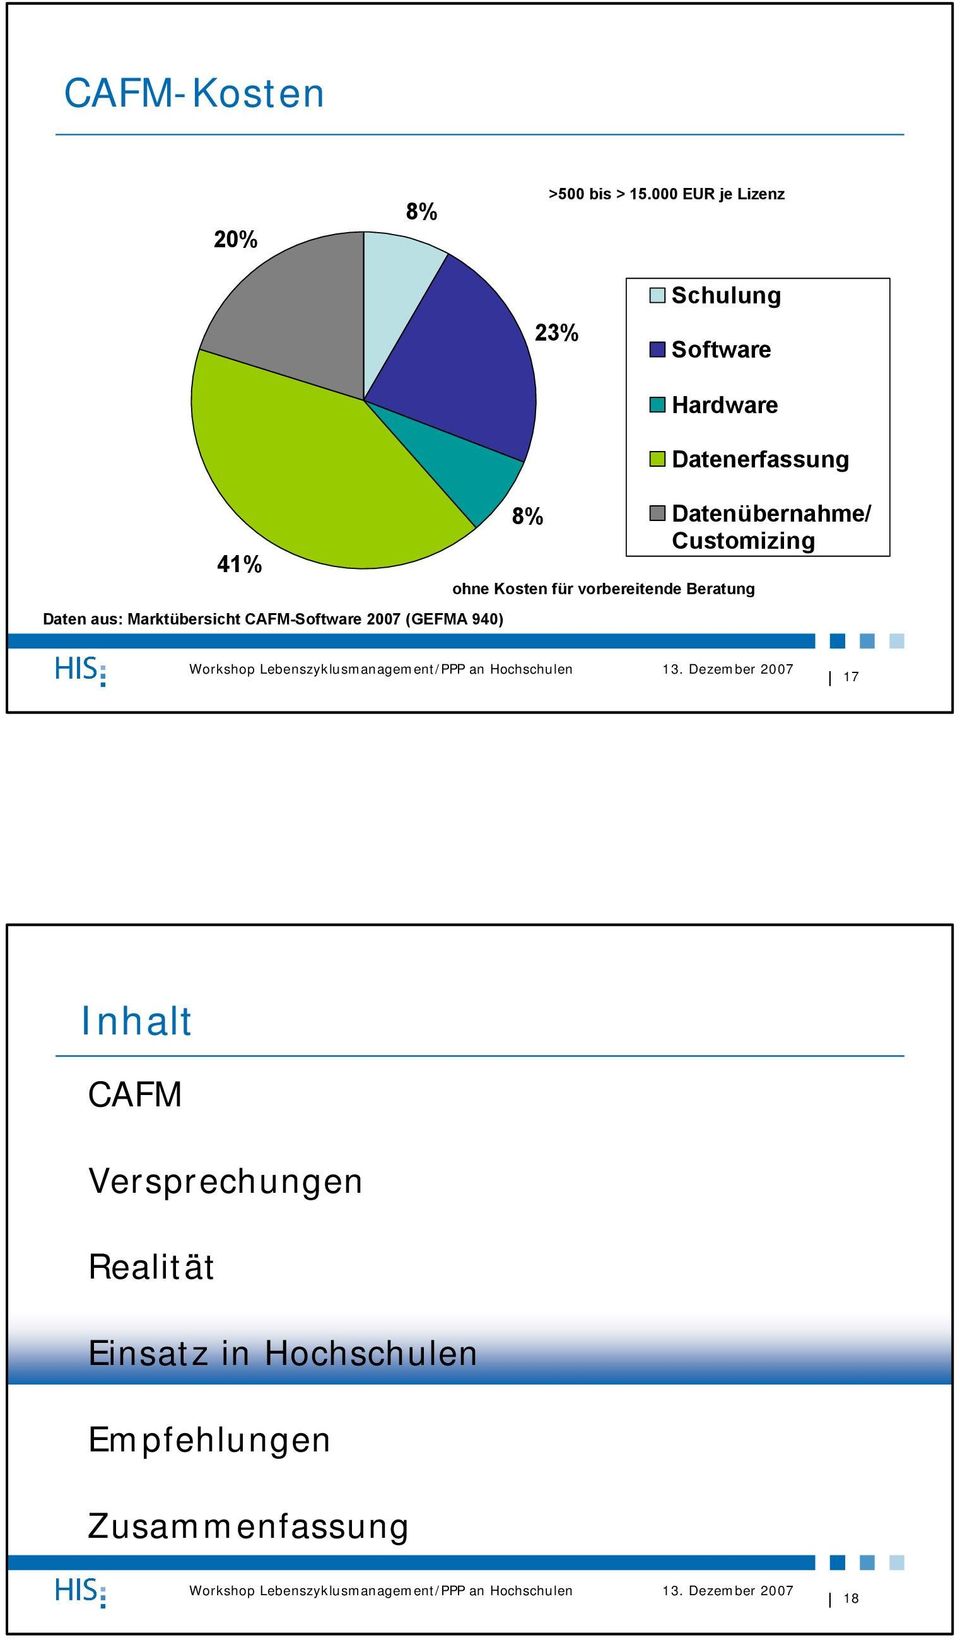 CAFM-Software 2007 (GEFMA 940) 8% Hardware ohne Kosten für vorbereitende